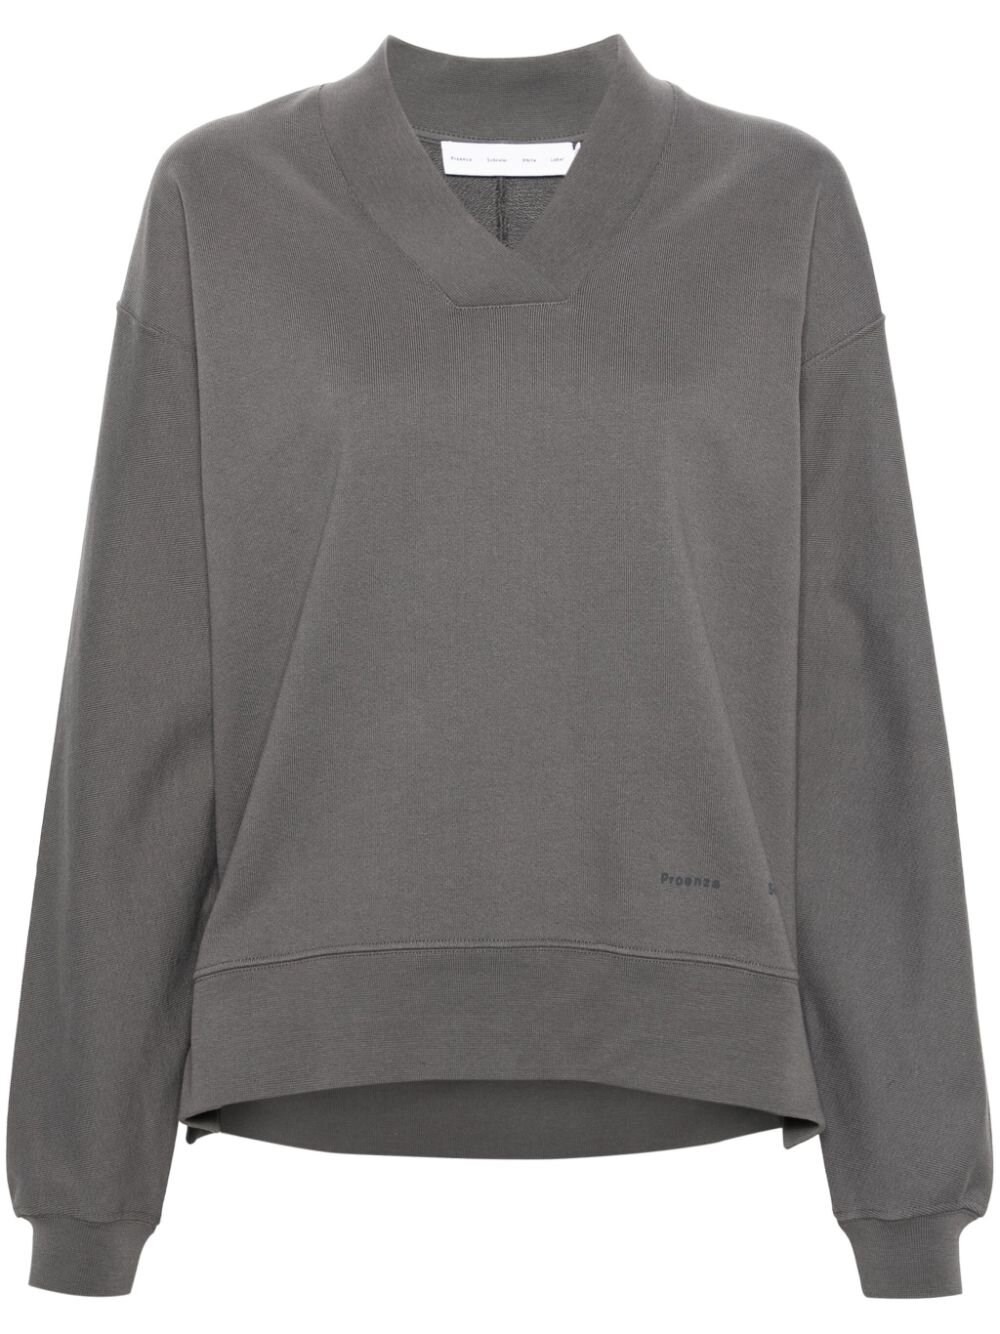 Proenza Schouler White Label Olivia Sweatshirt In Gray